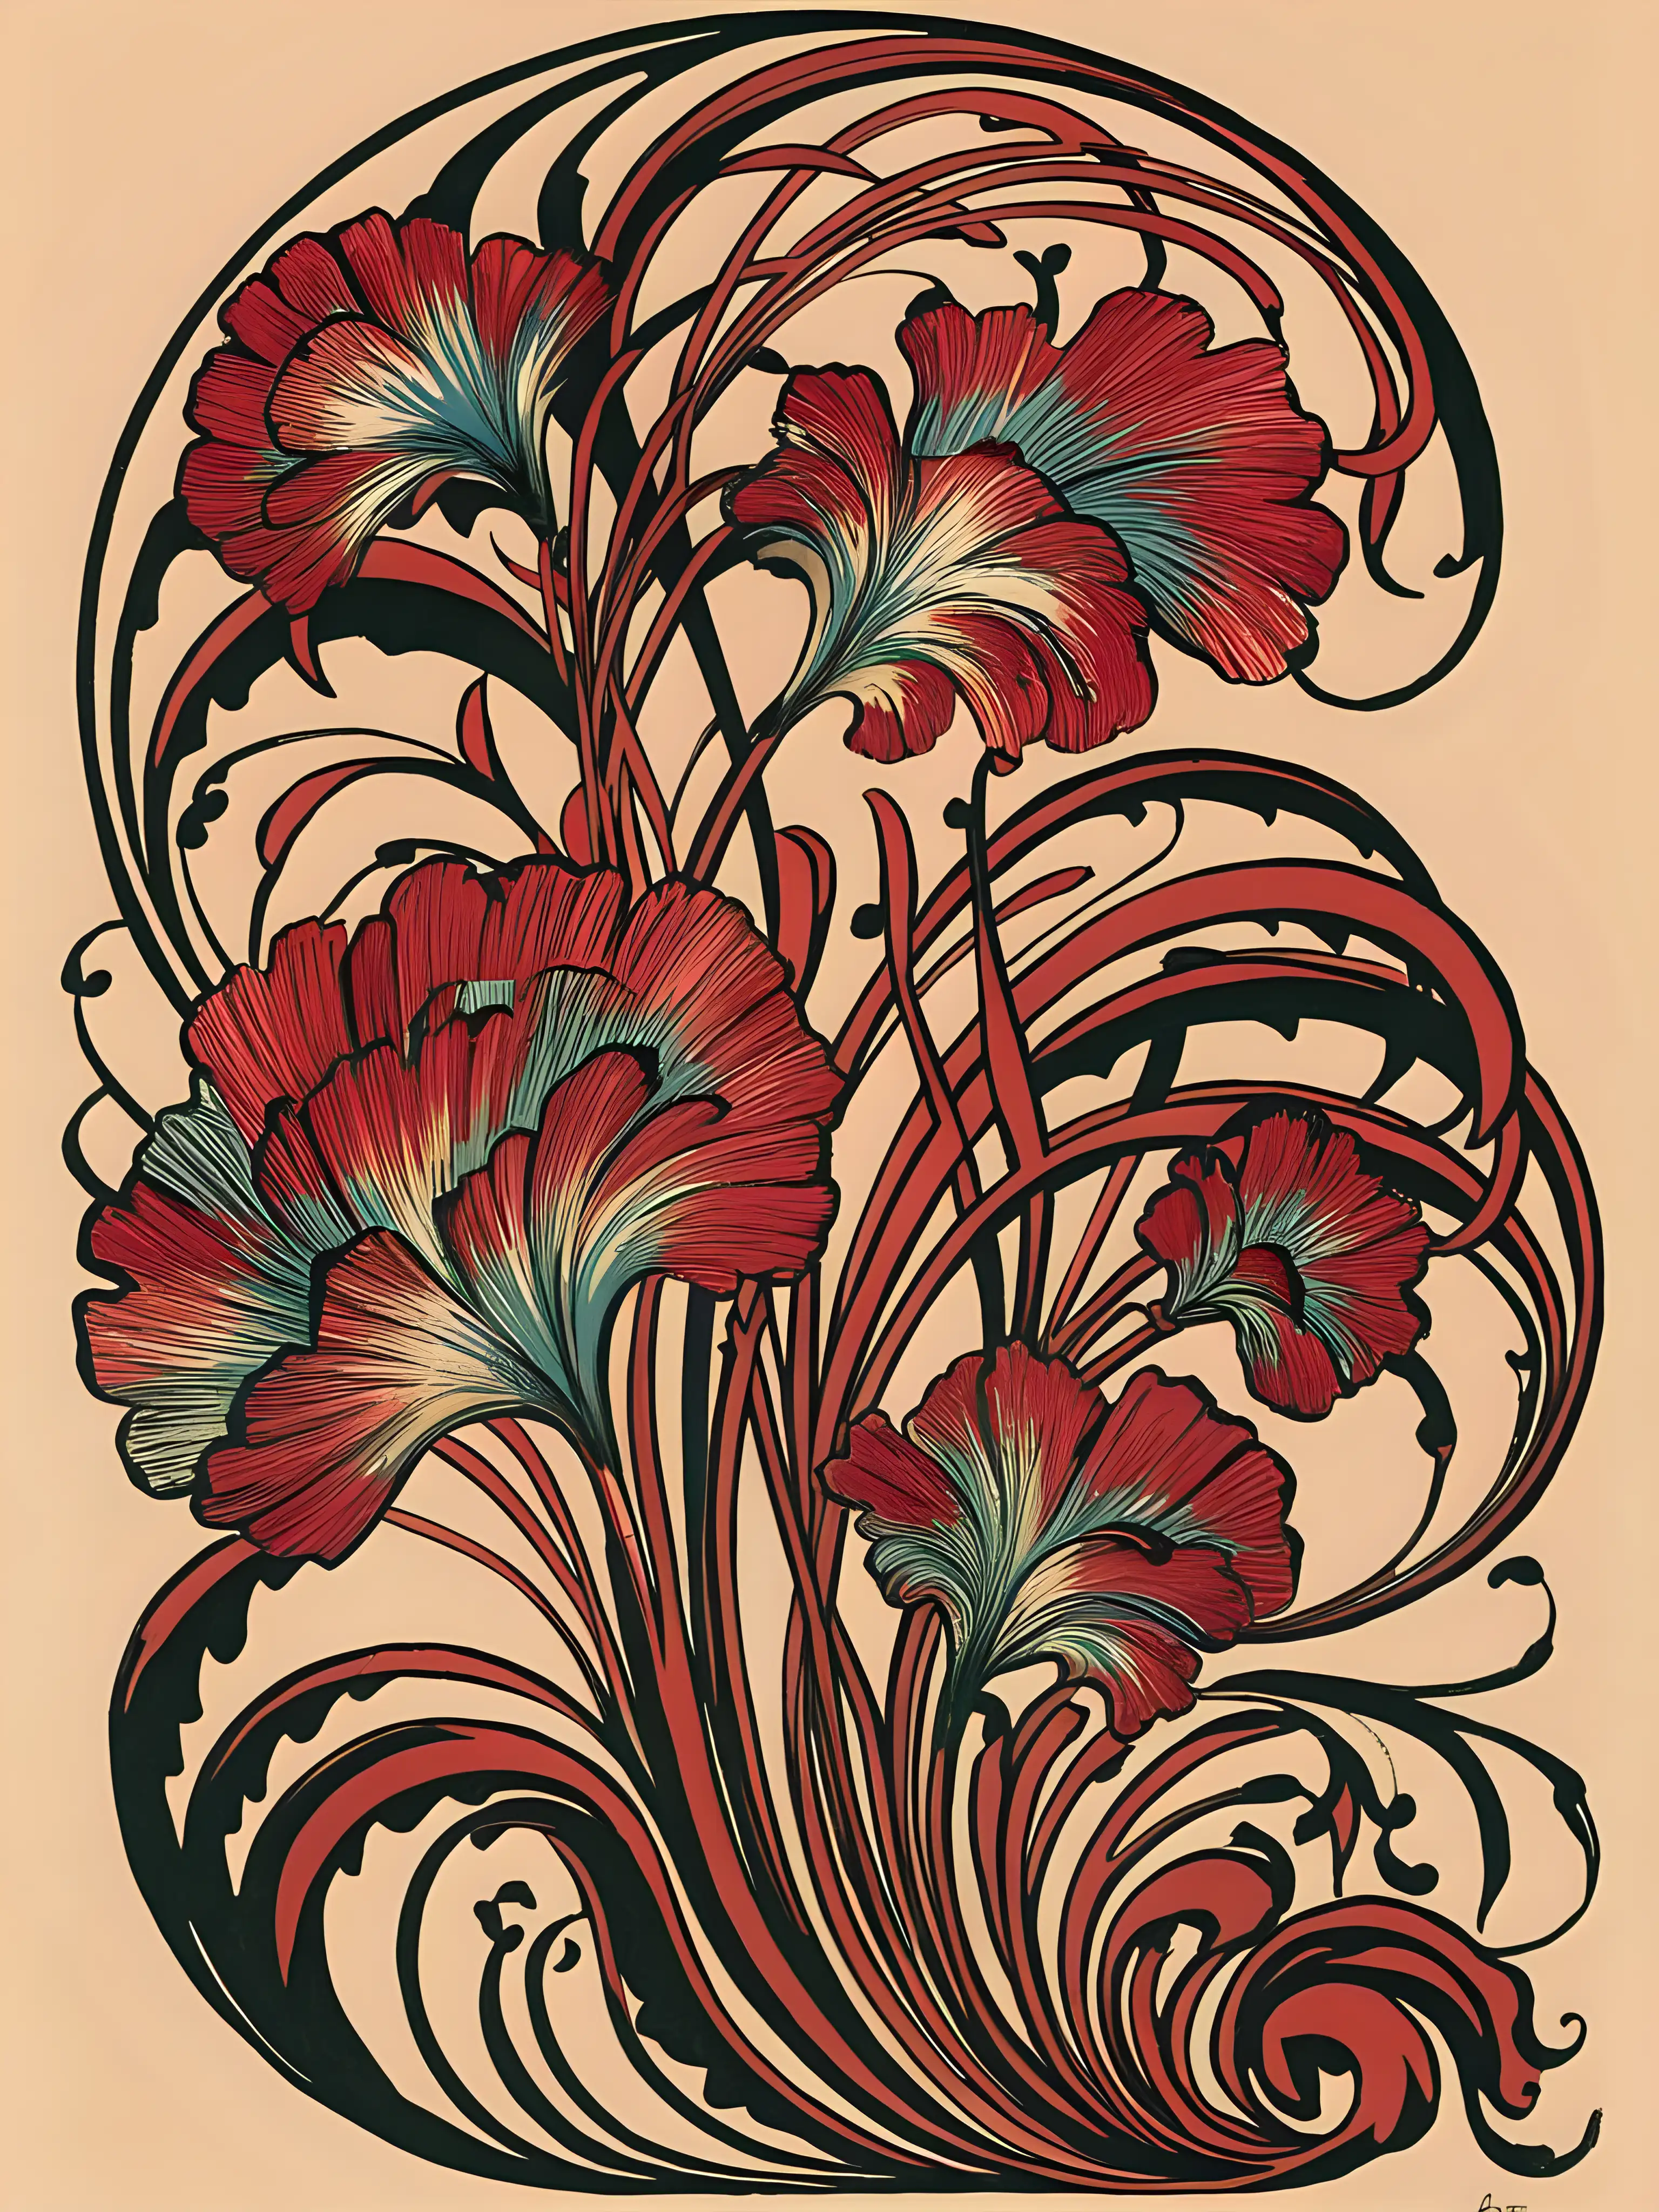 Elegant Art Nouveau Print with Flowing Lines and Floral Motifs